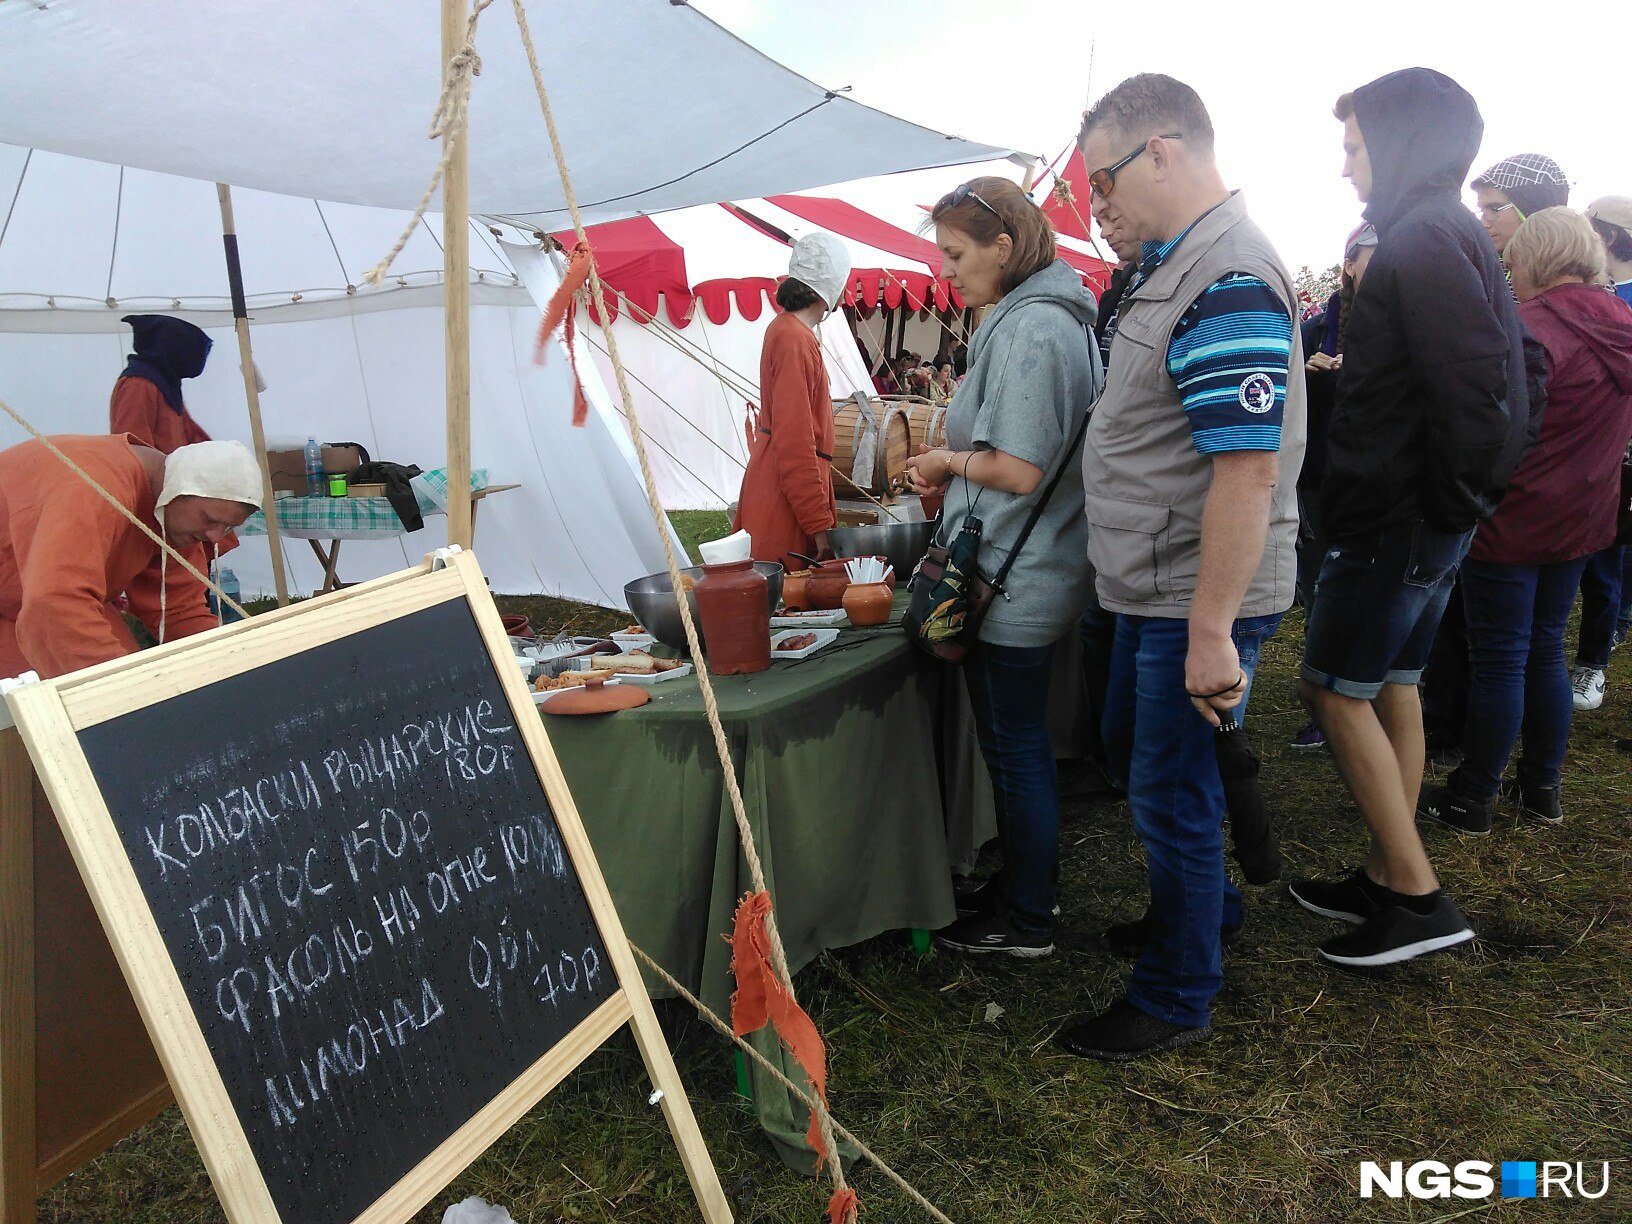 Участники и зрители фестиваля рады были подкрепиться рыцарскими колбасками